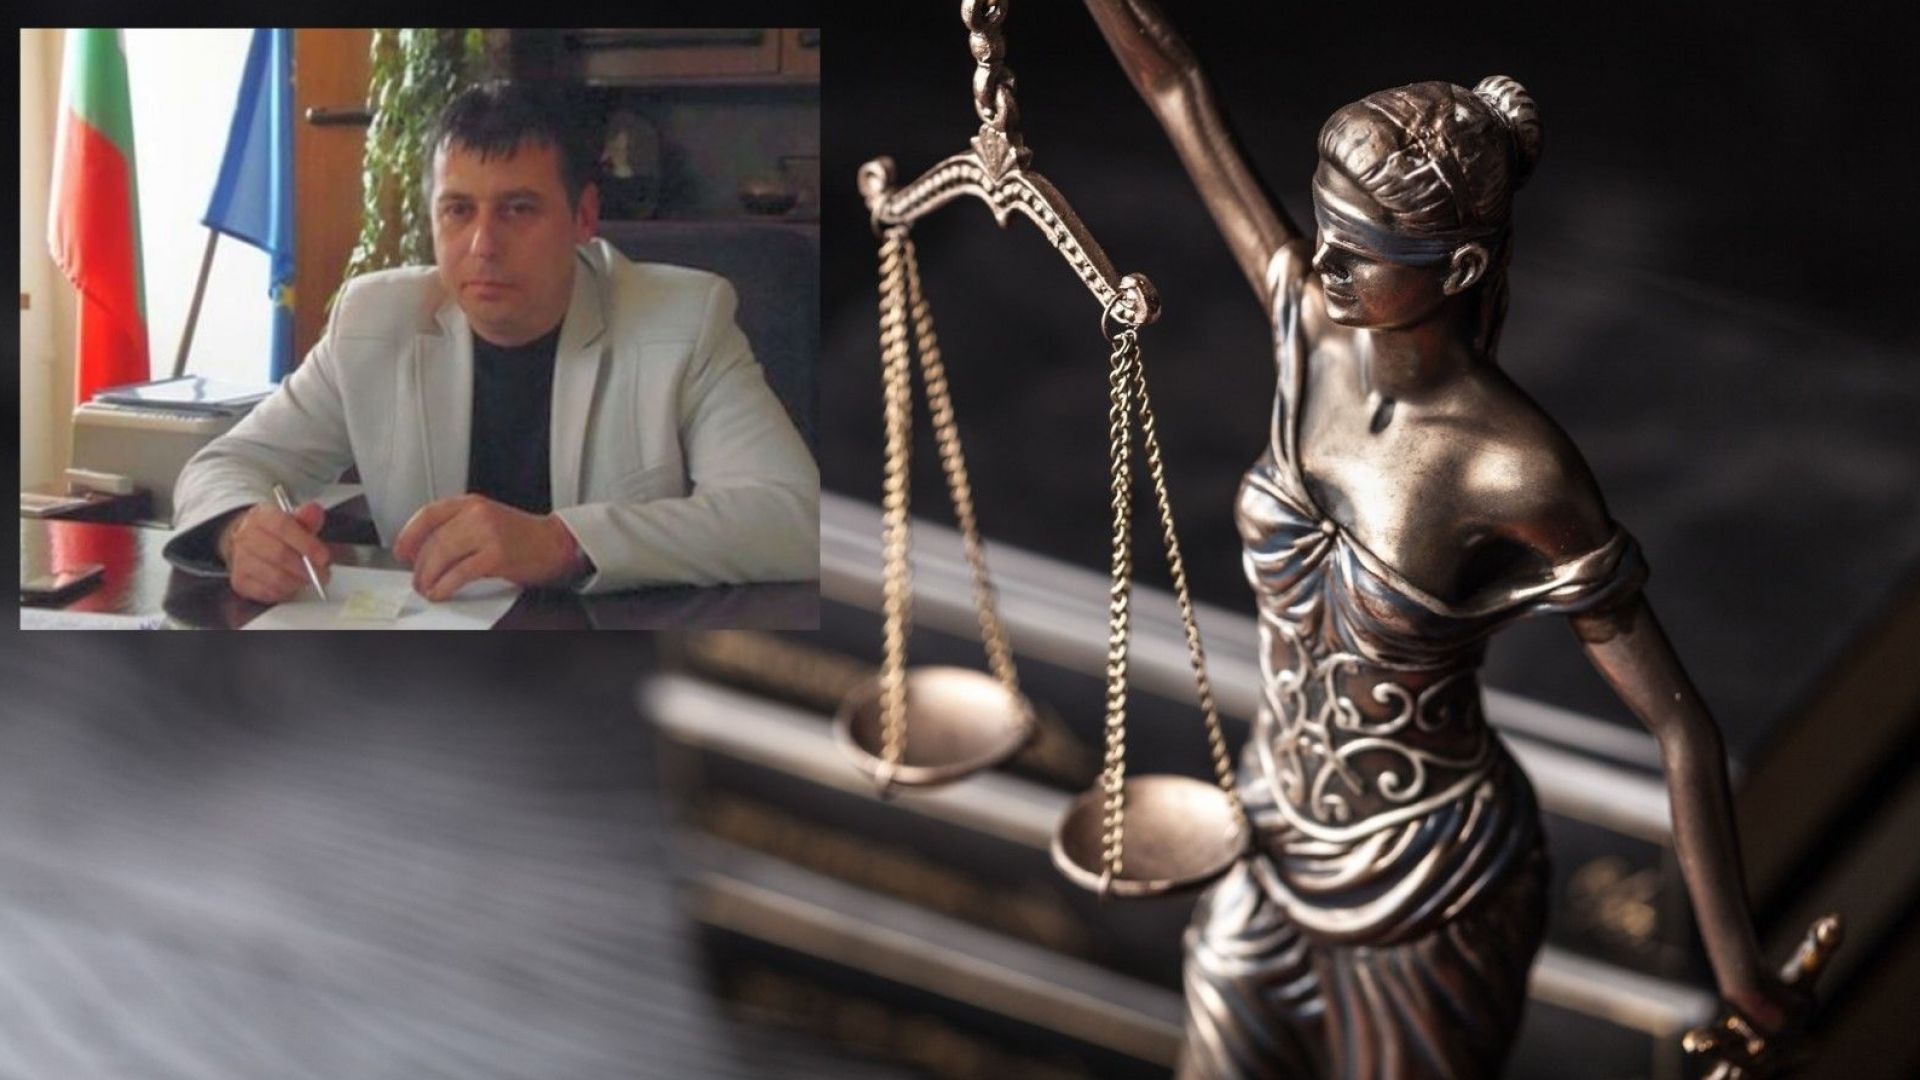 Пернишкият окръжен съд оправда бившия кмет на Трън Станислав Николов